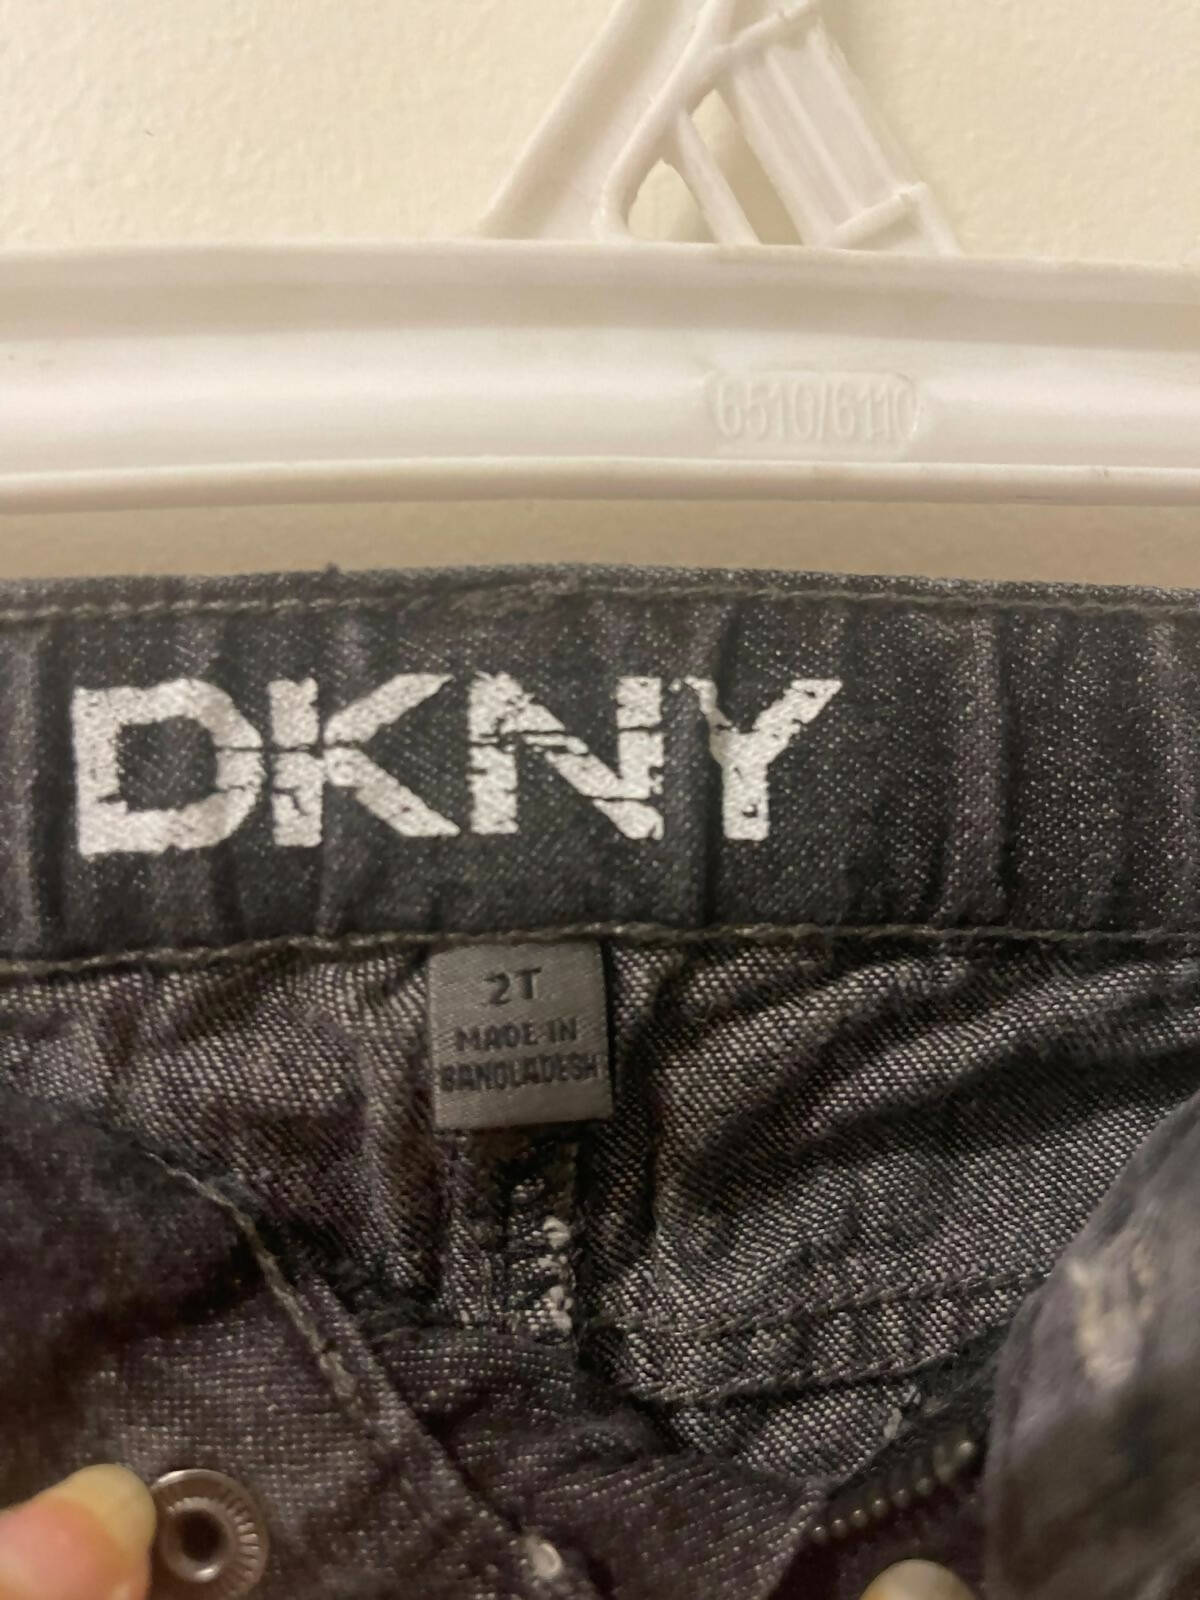 DKNY | Black Jeans | Boys Bottoms & Pants | Preloved